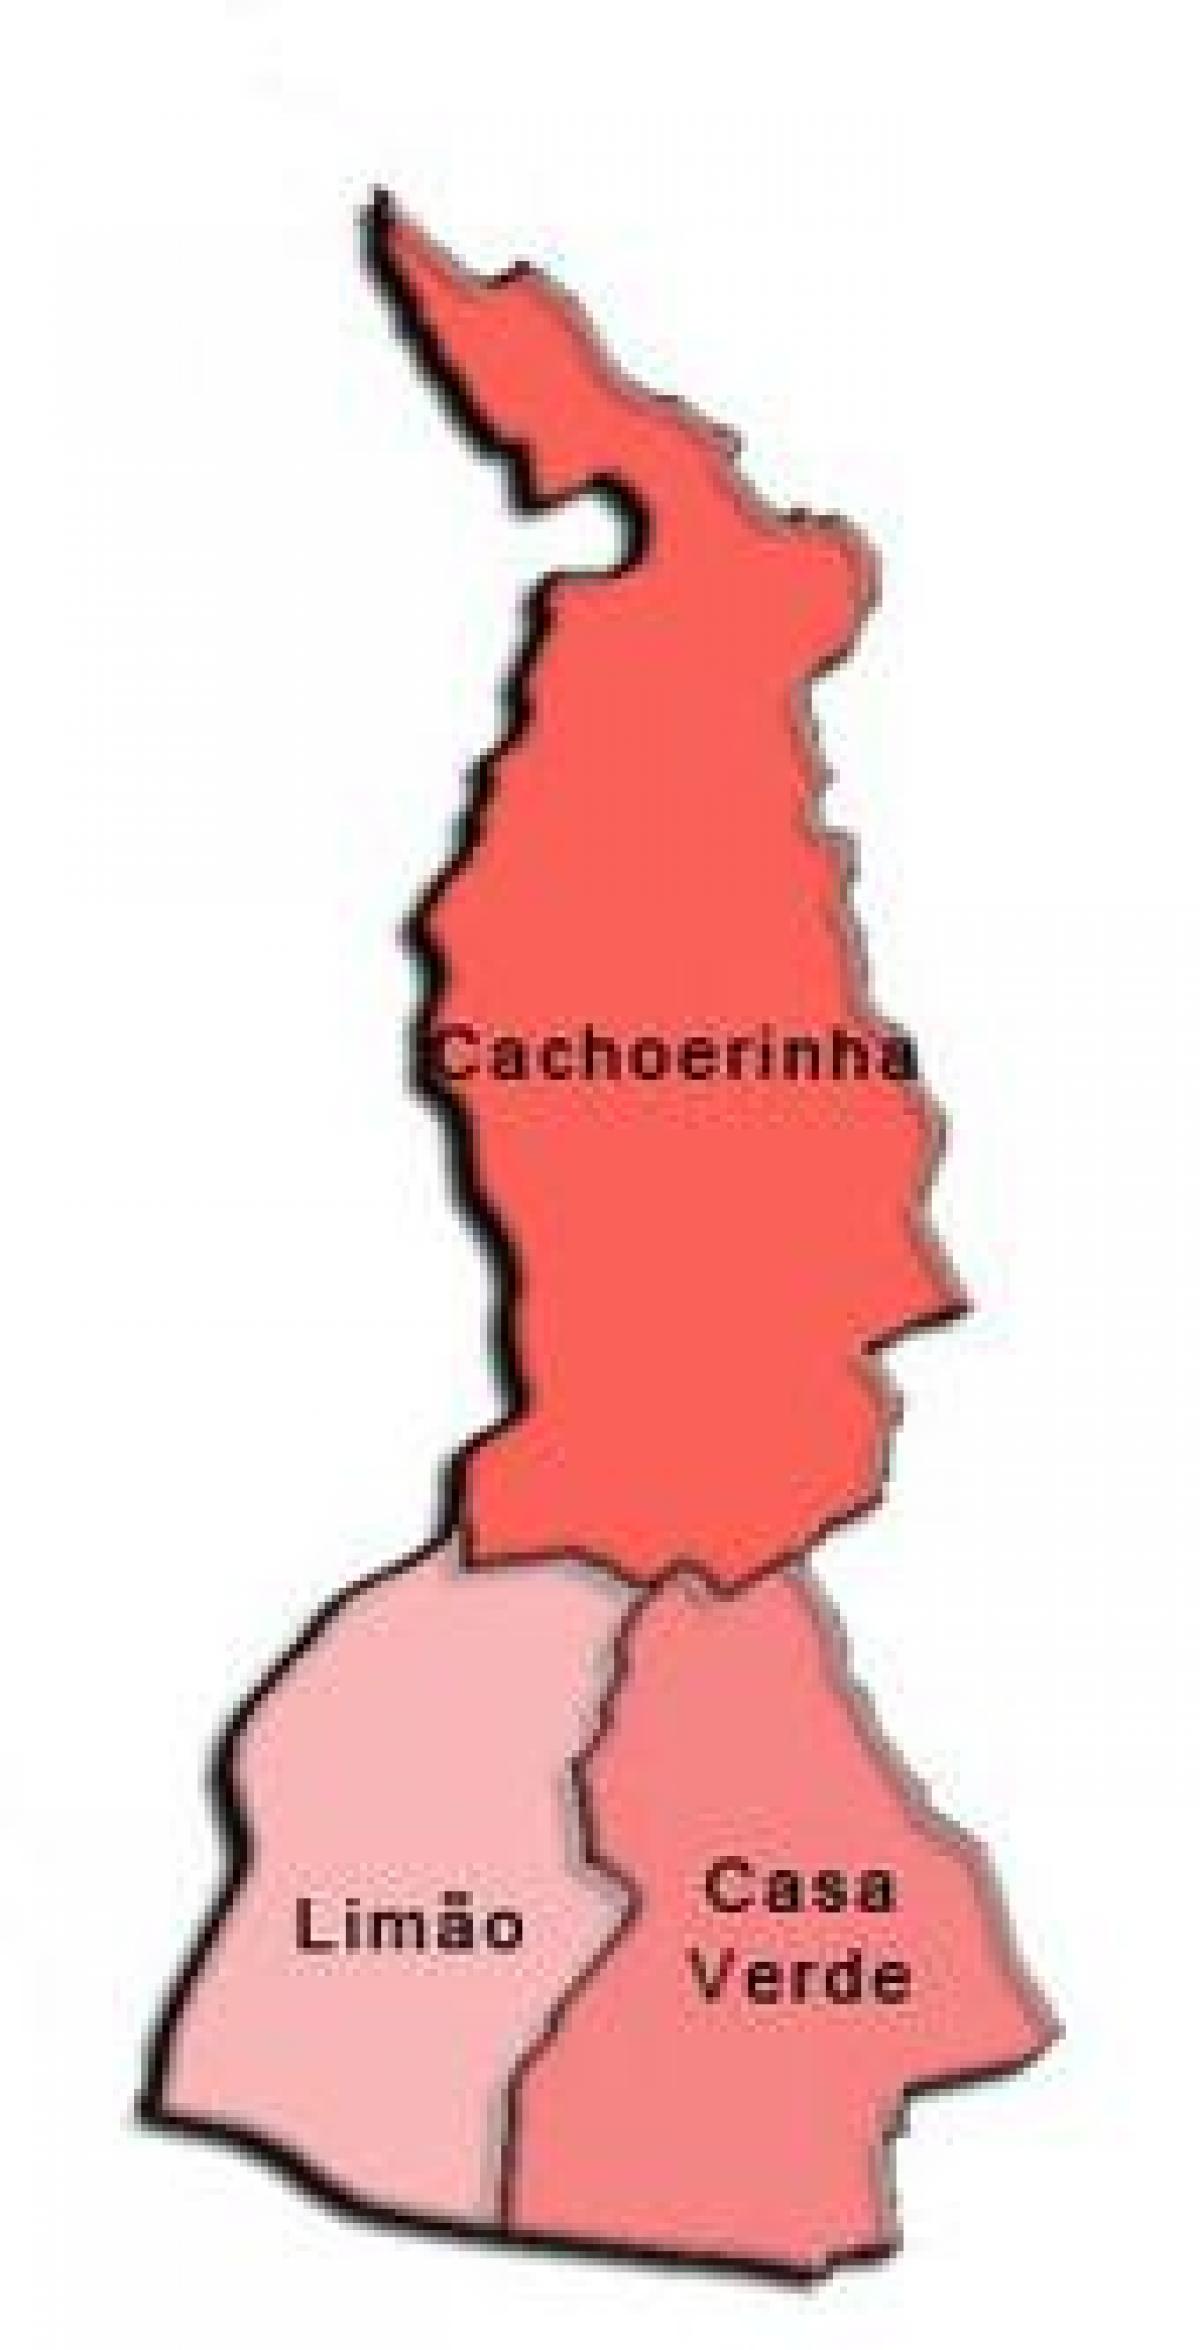 نقشہ کے کاسا وردے ذیلی صوبے